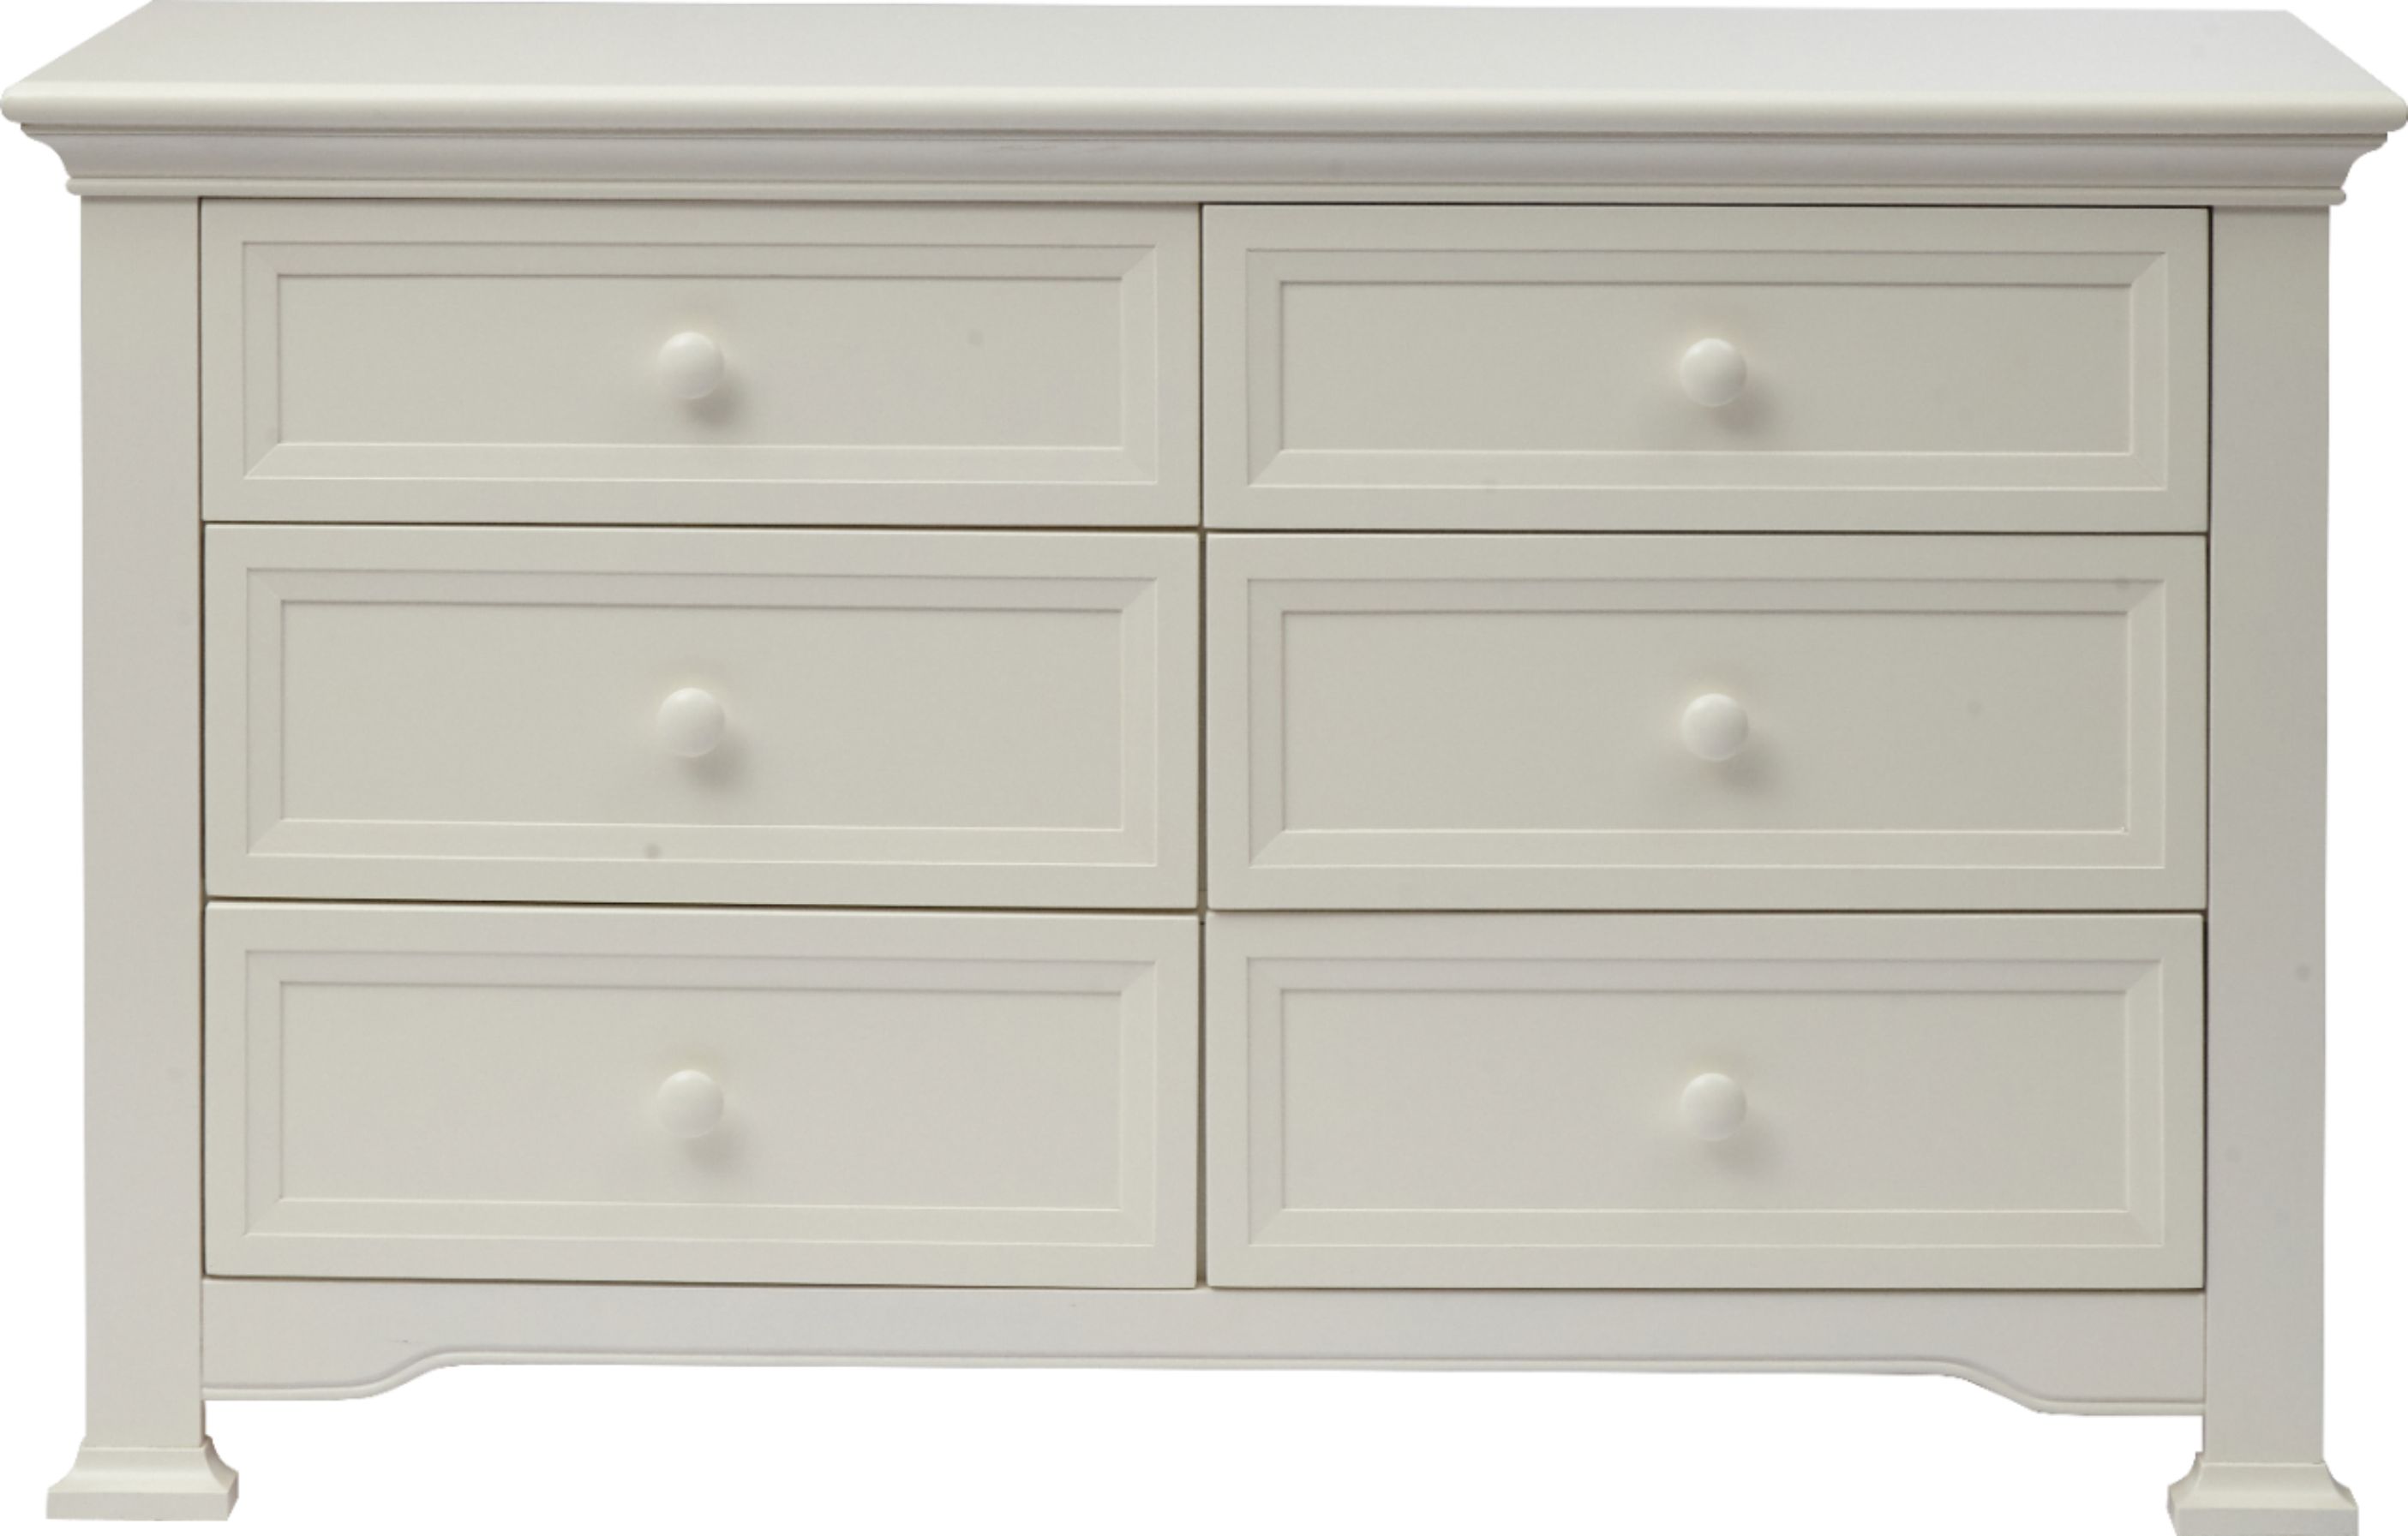 Kingsley Brunswick 6 Drawer Dresser White 3806 Wh Best Buy